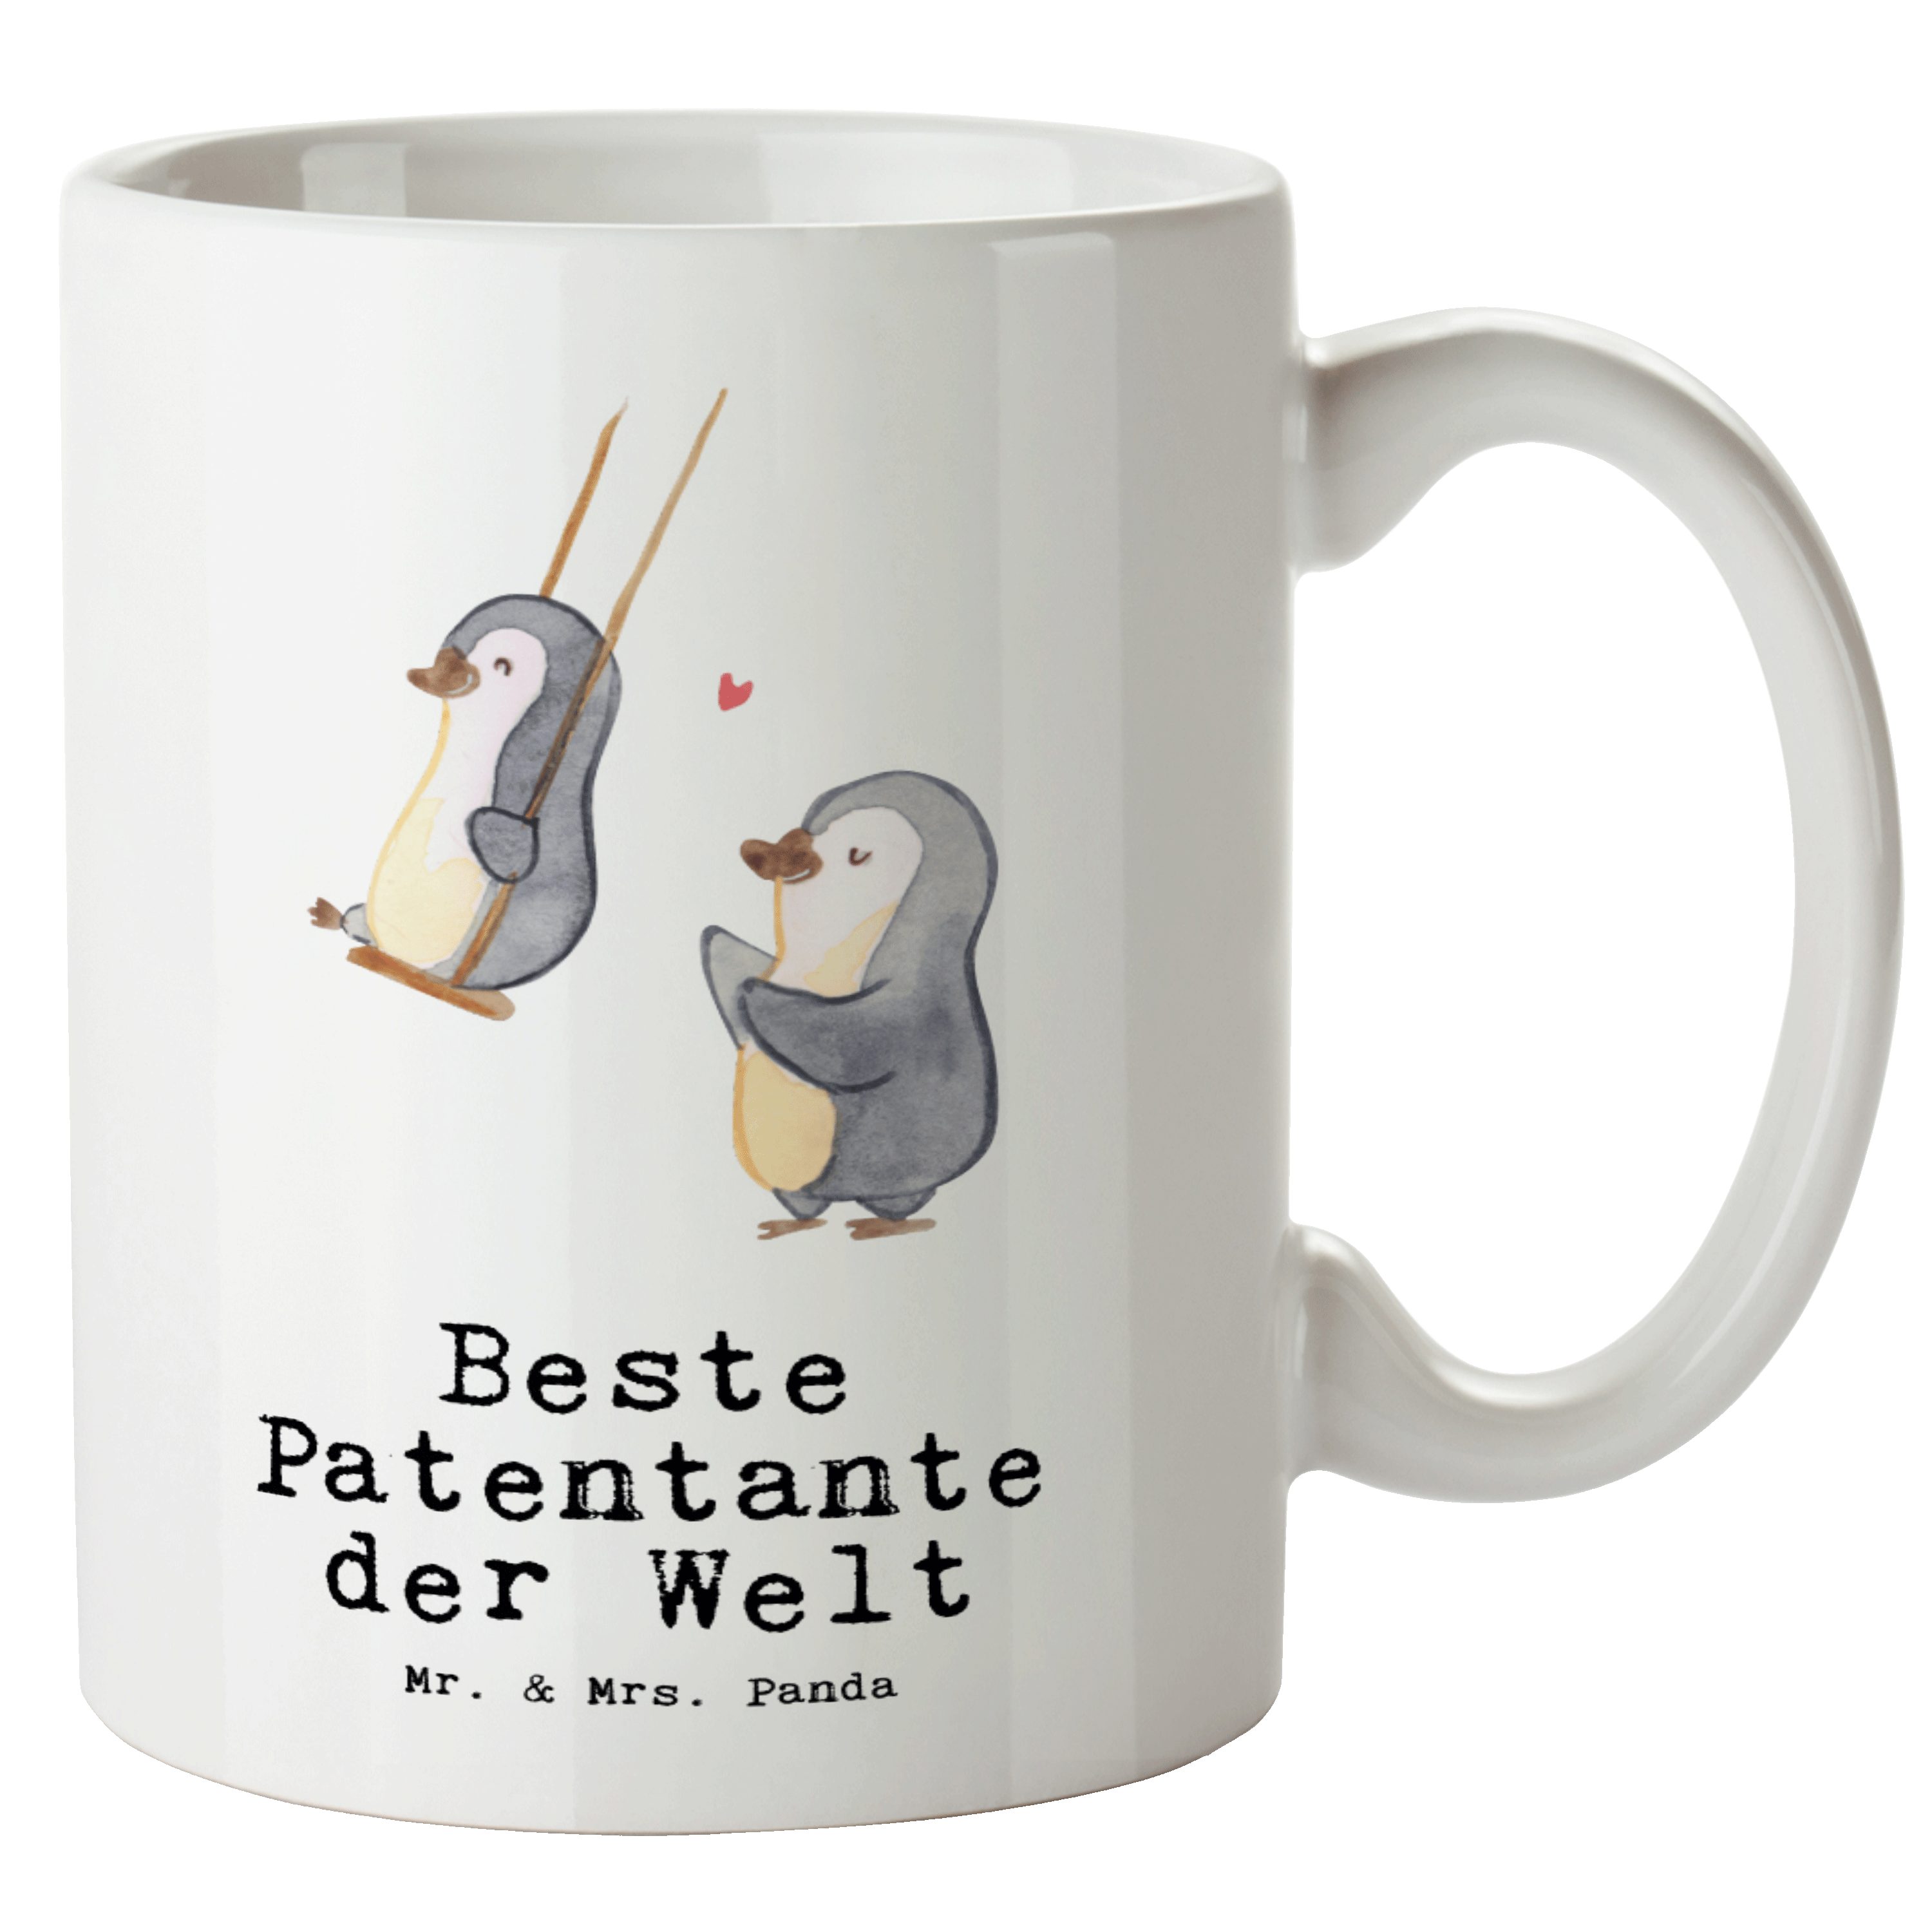 Mr. & Mrs. Panda Tasse Pinguin Beste Patentante der Welt - Weiß - Geschenk, Neffe, XL Becher, XL Tasse Keramik